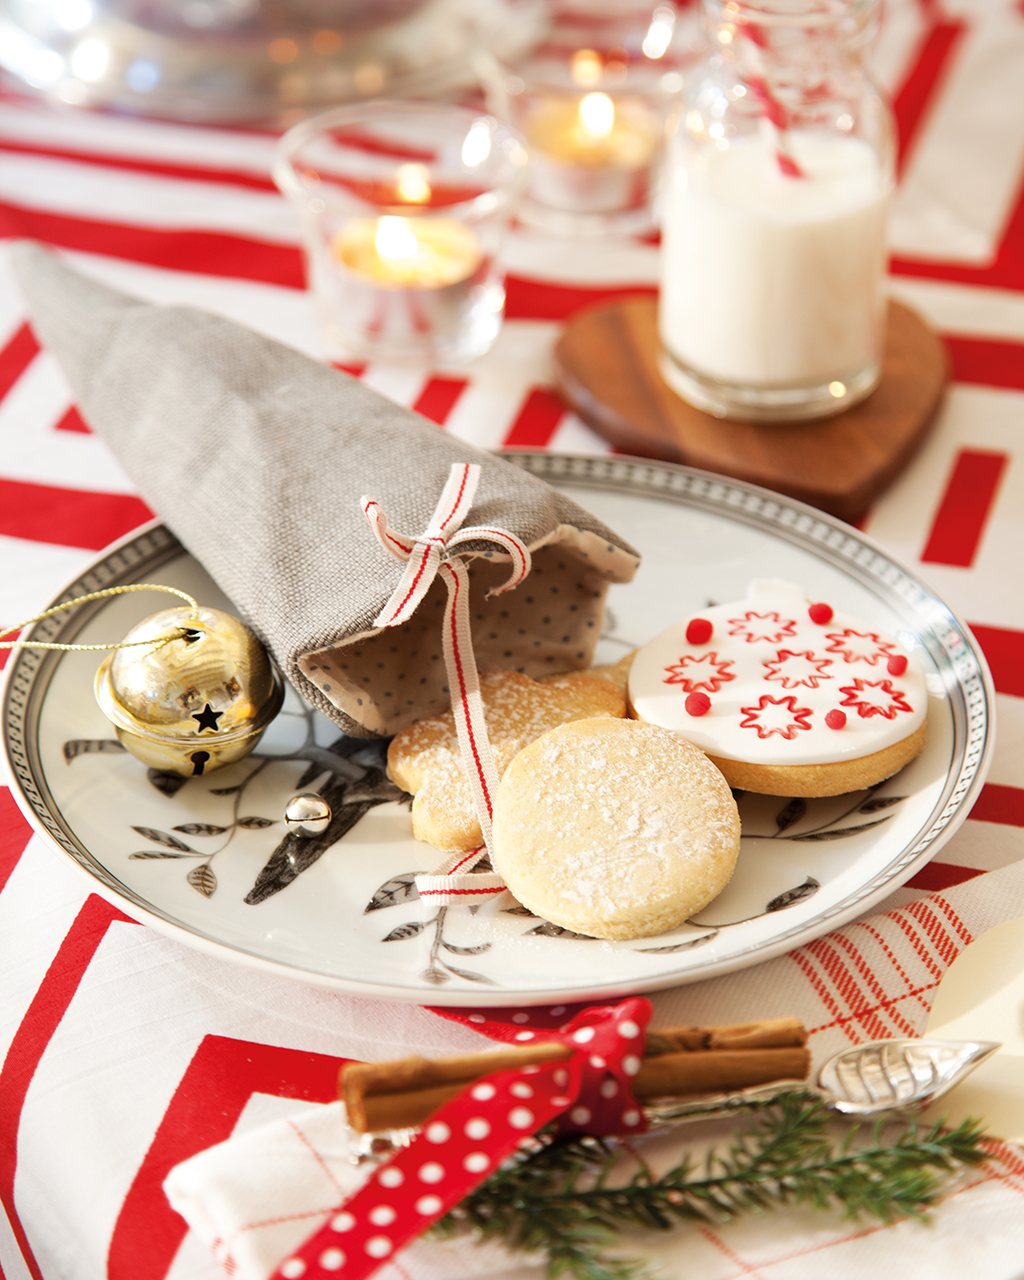 Detalle de plato con galletas, bola de navidad y saquito. Sobre la mesa